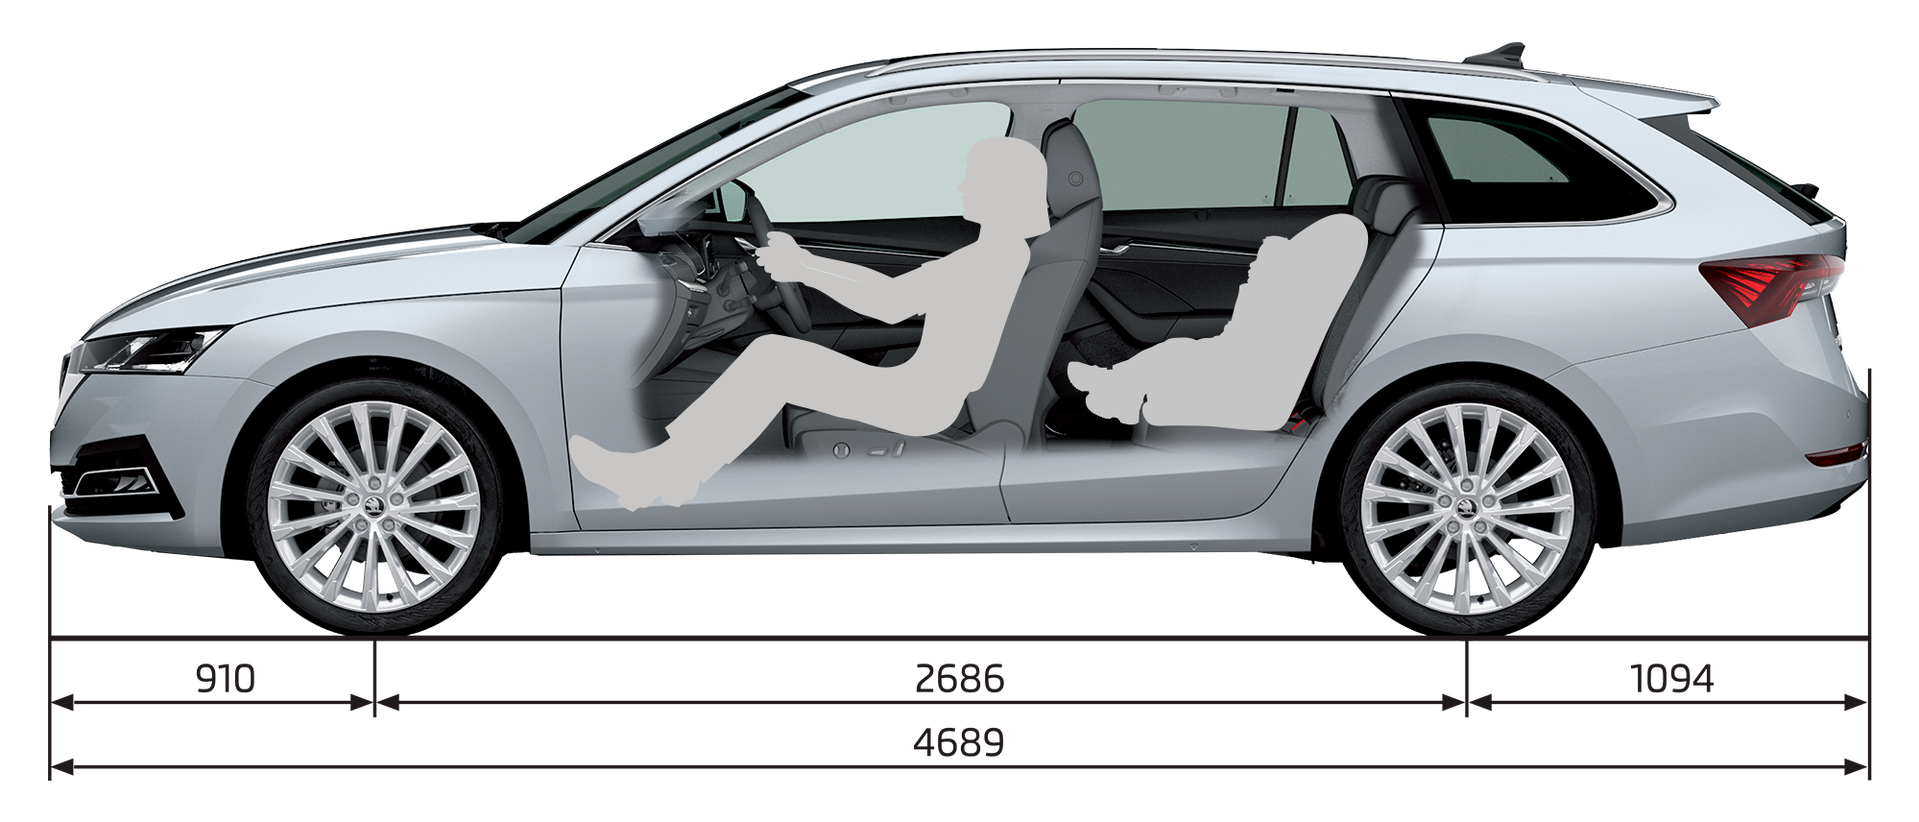 Abmessungen des neuen Škoda Octavia Combi 2020 in der Seitenansicht